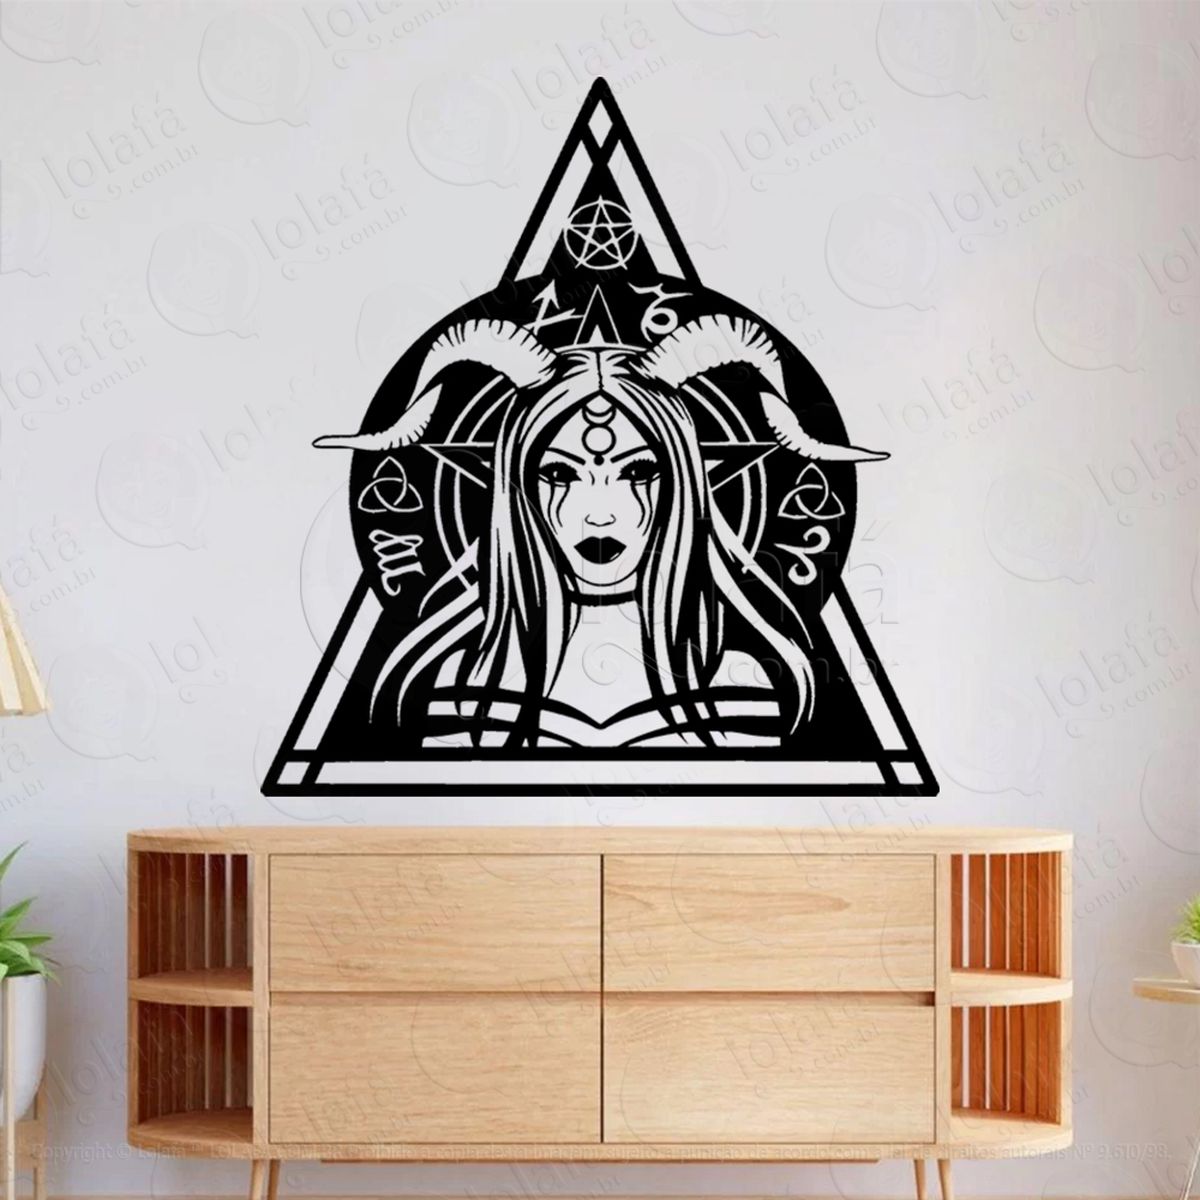 garota ocultista triângulo occult girl adesivo de parede decorativo para casa, sala, quarto, vidro e altar ocultista - mod:124